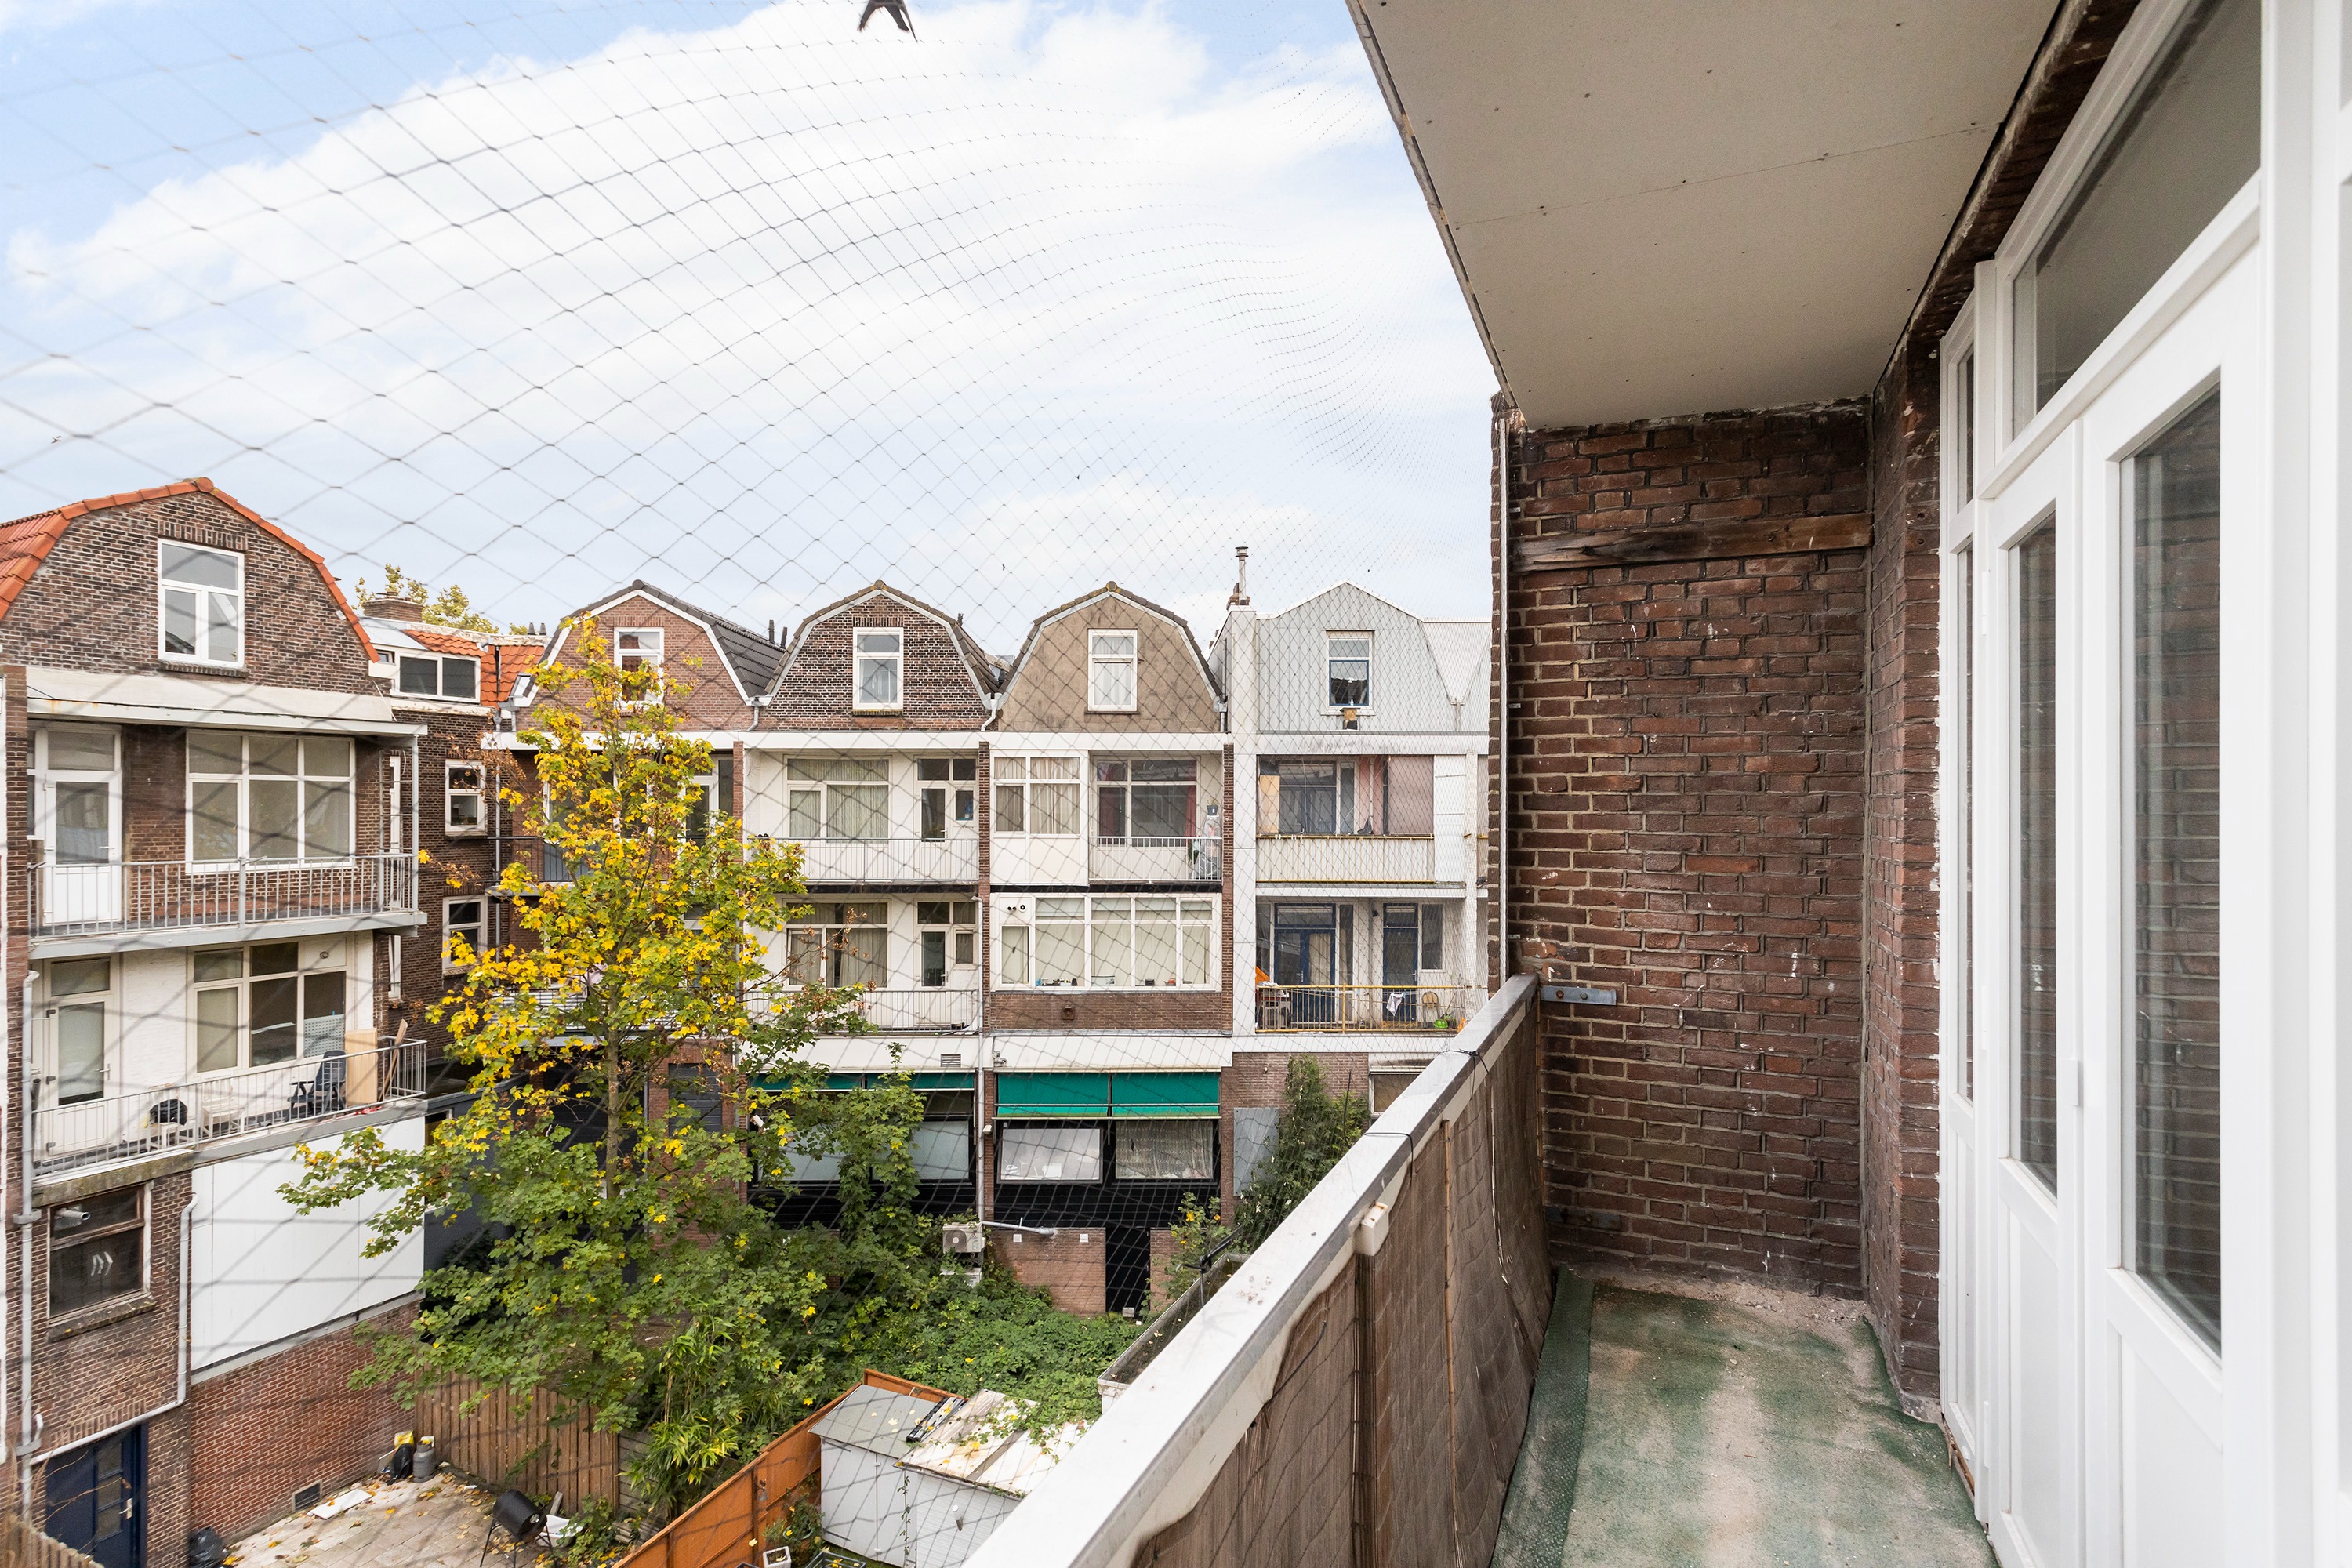 Woning / appartement - Rotterdam - Hillevliet 134 A02